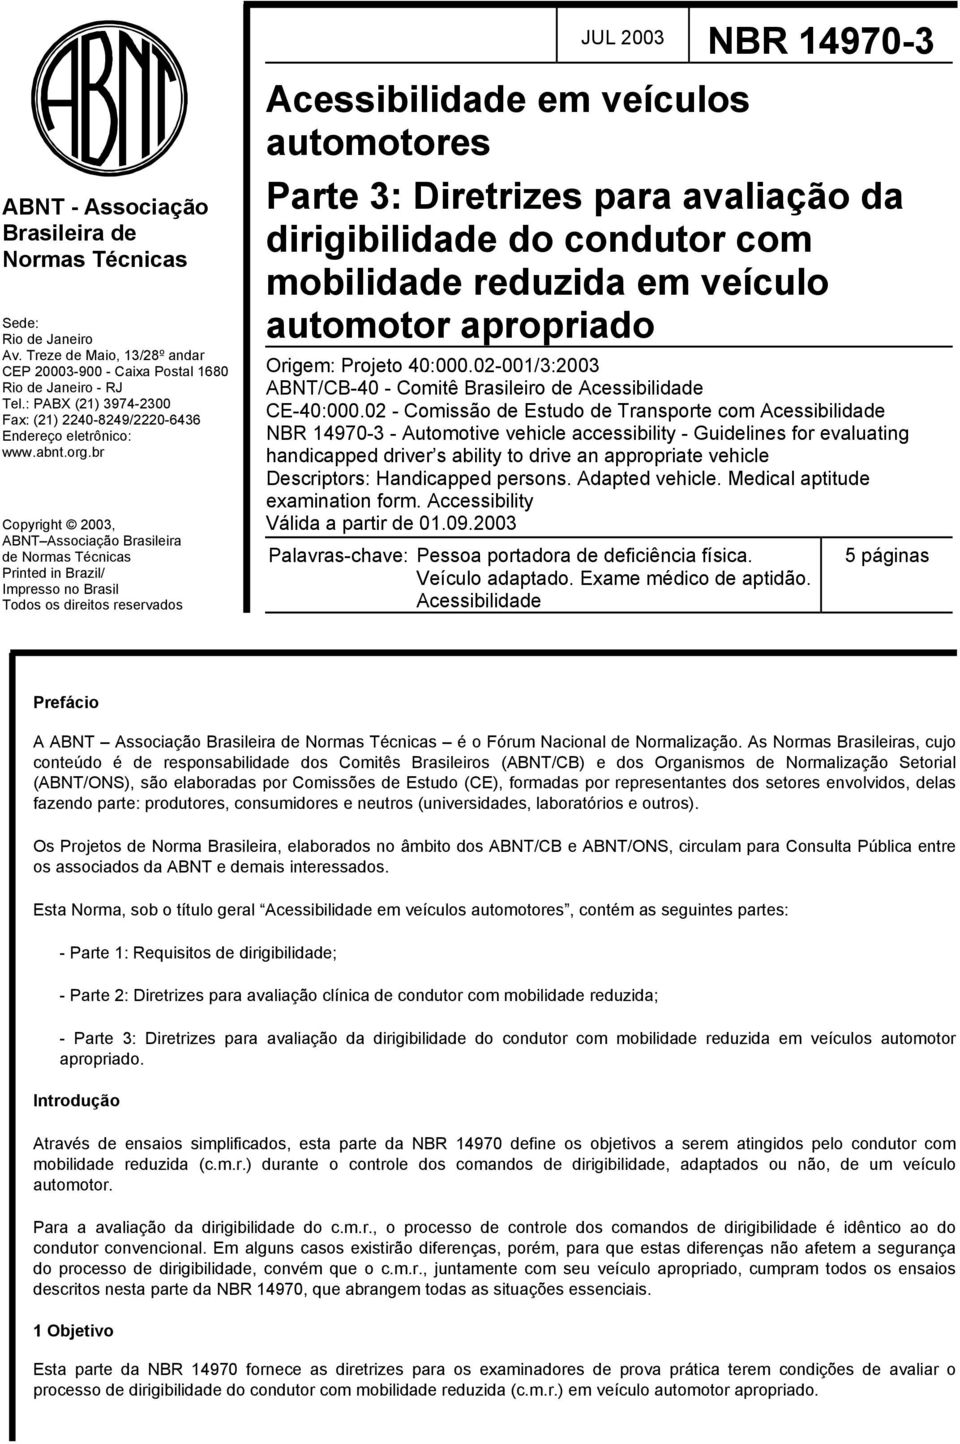 br Copyright 2003, ABNT Associação Brasileira de Normas Técnicas Printed in Brazil/ Impresso no Brasil Todos os direitos reservados Acessibilidade em veículos automotores Parte 3: Diretrizes para